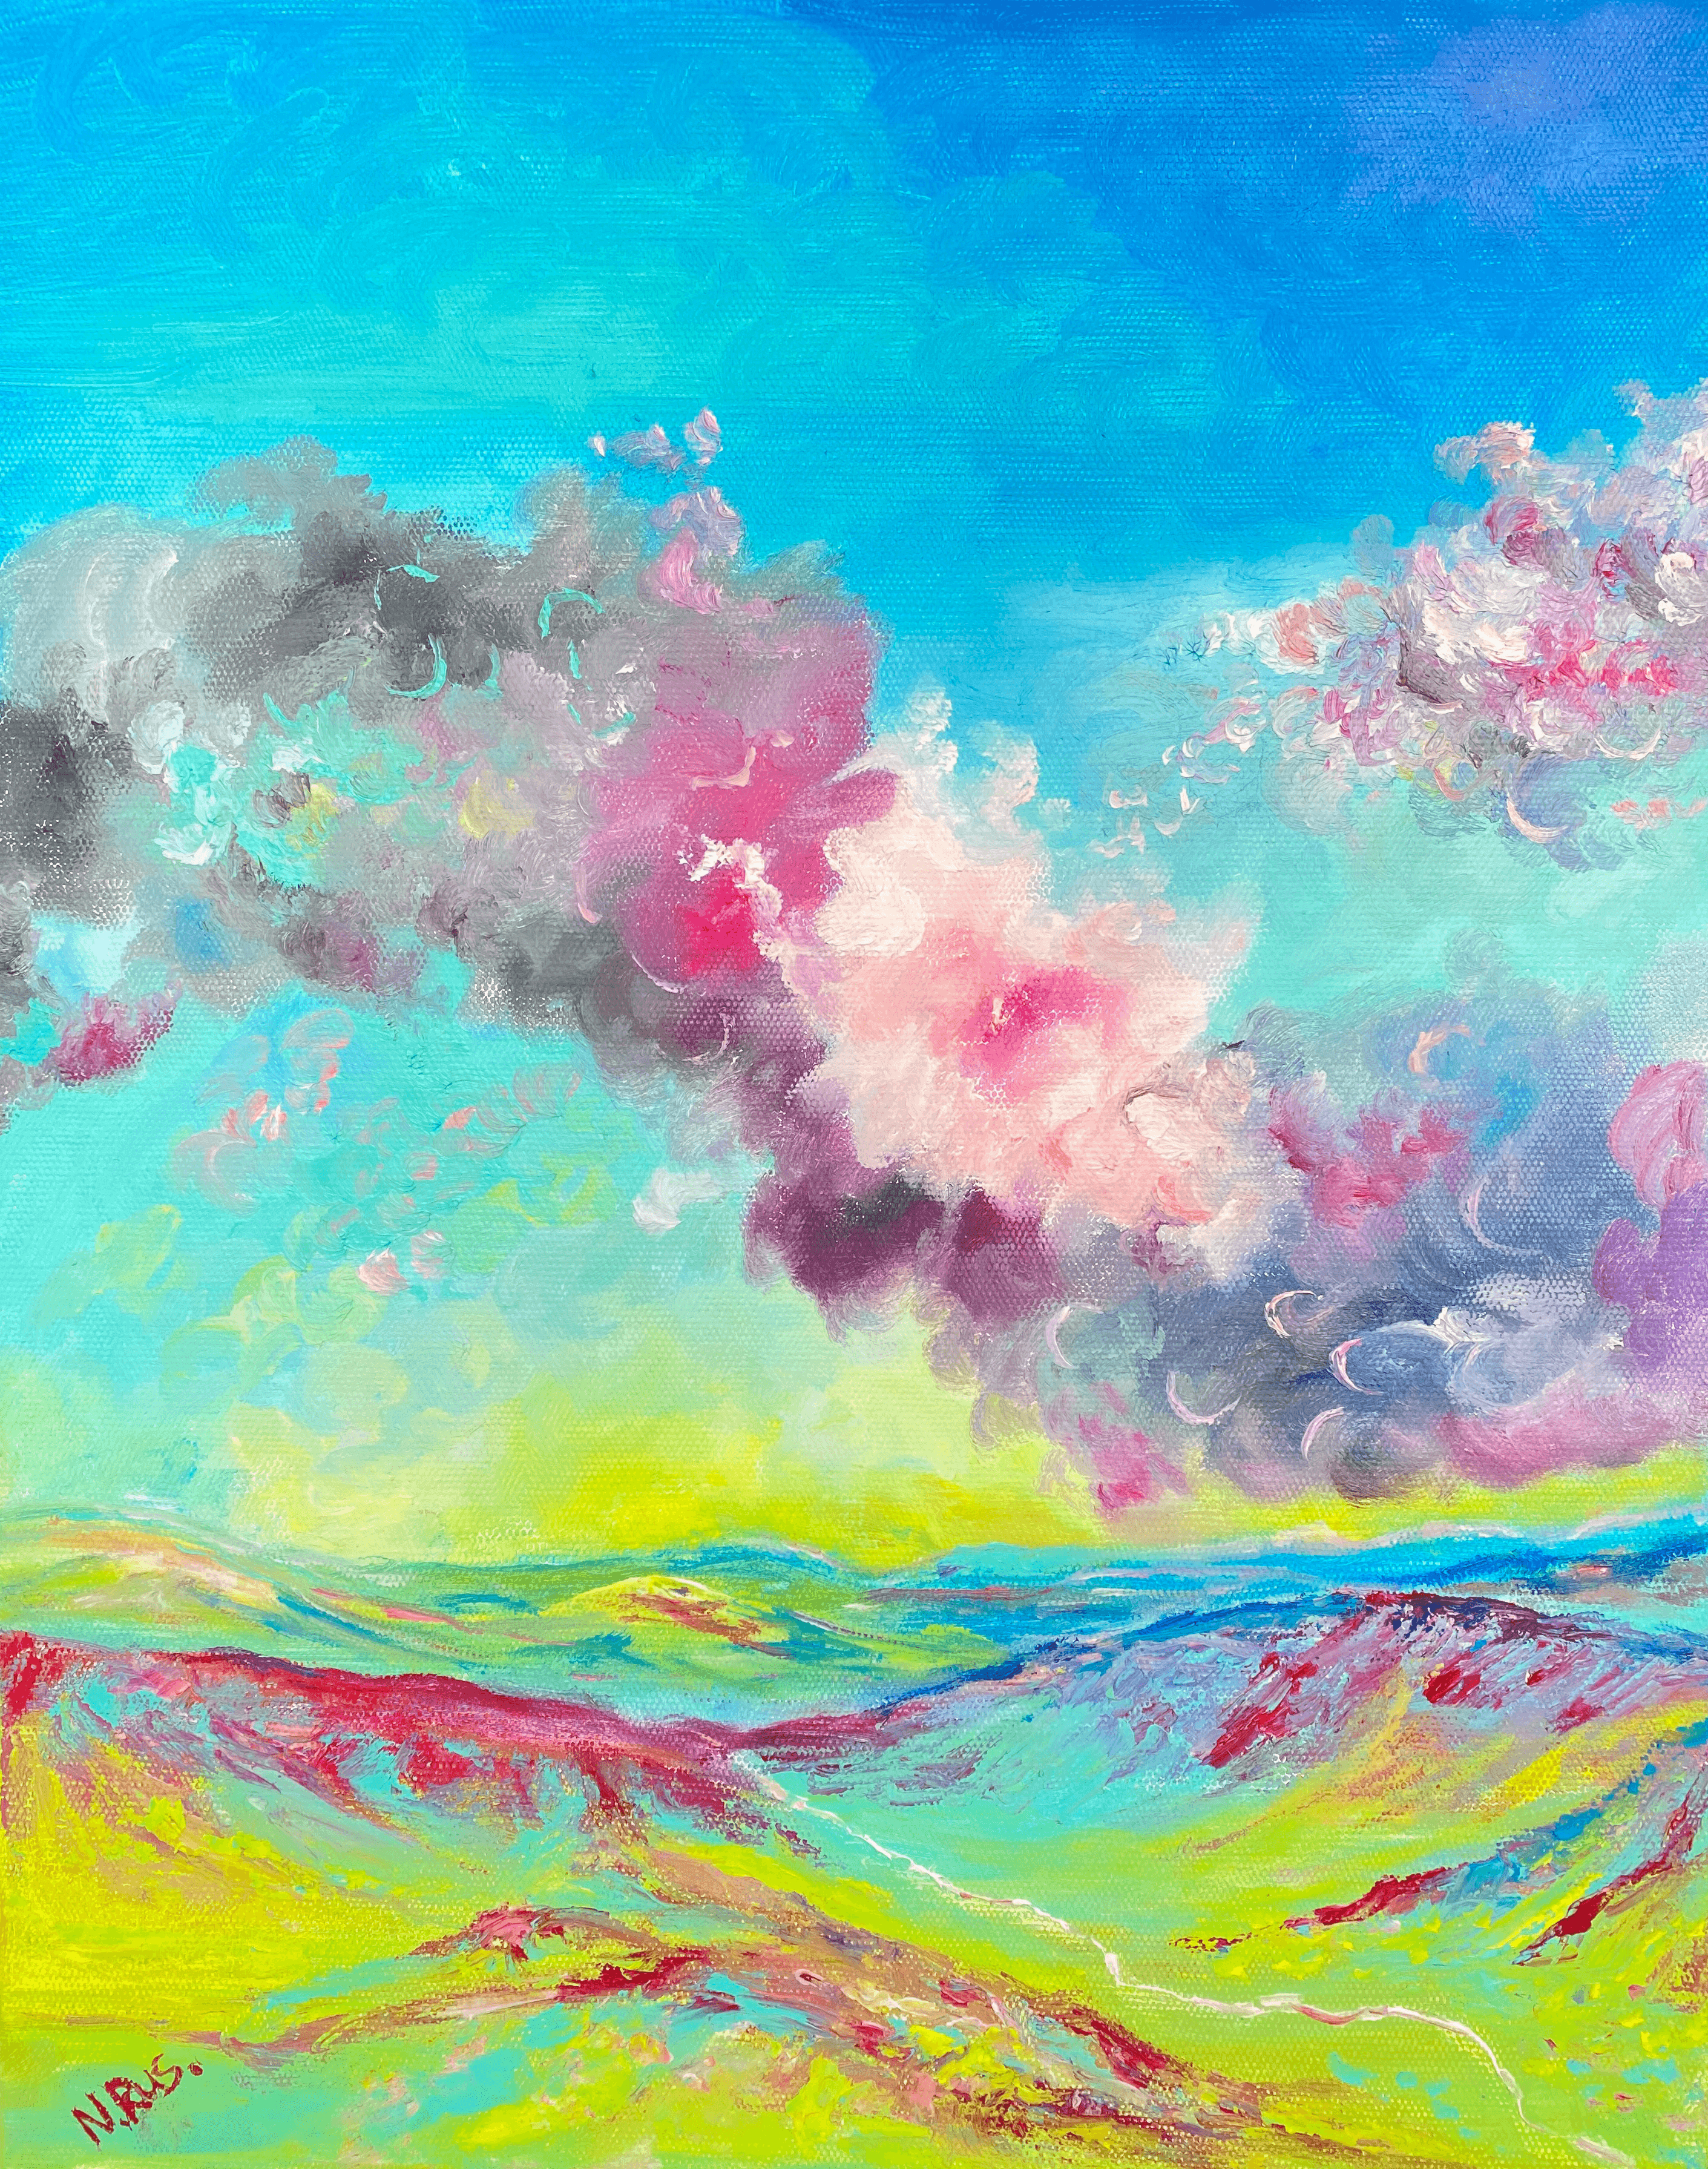 The sky speaks - Opposites by Natalie Rusinova